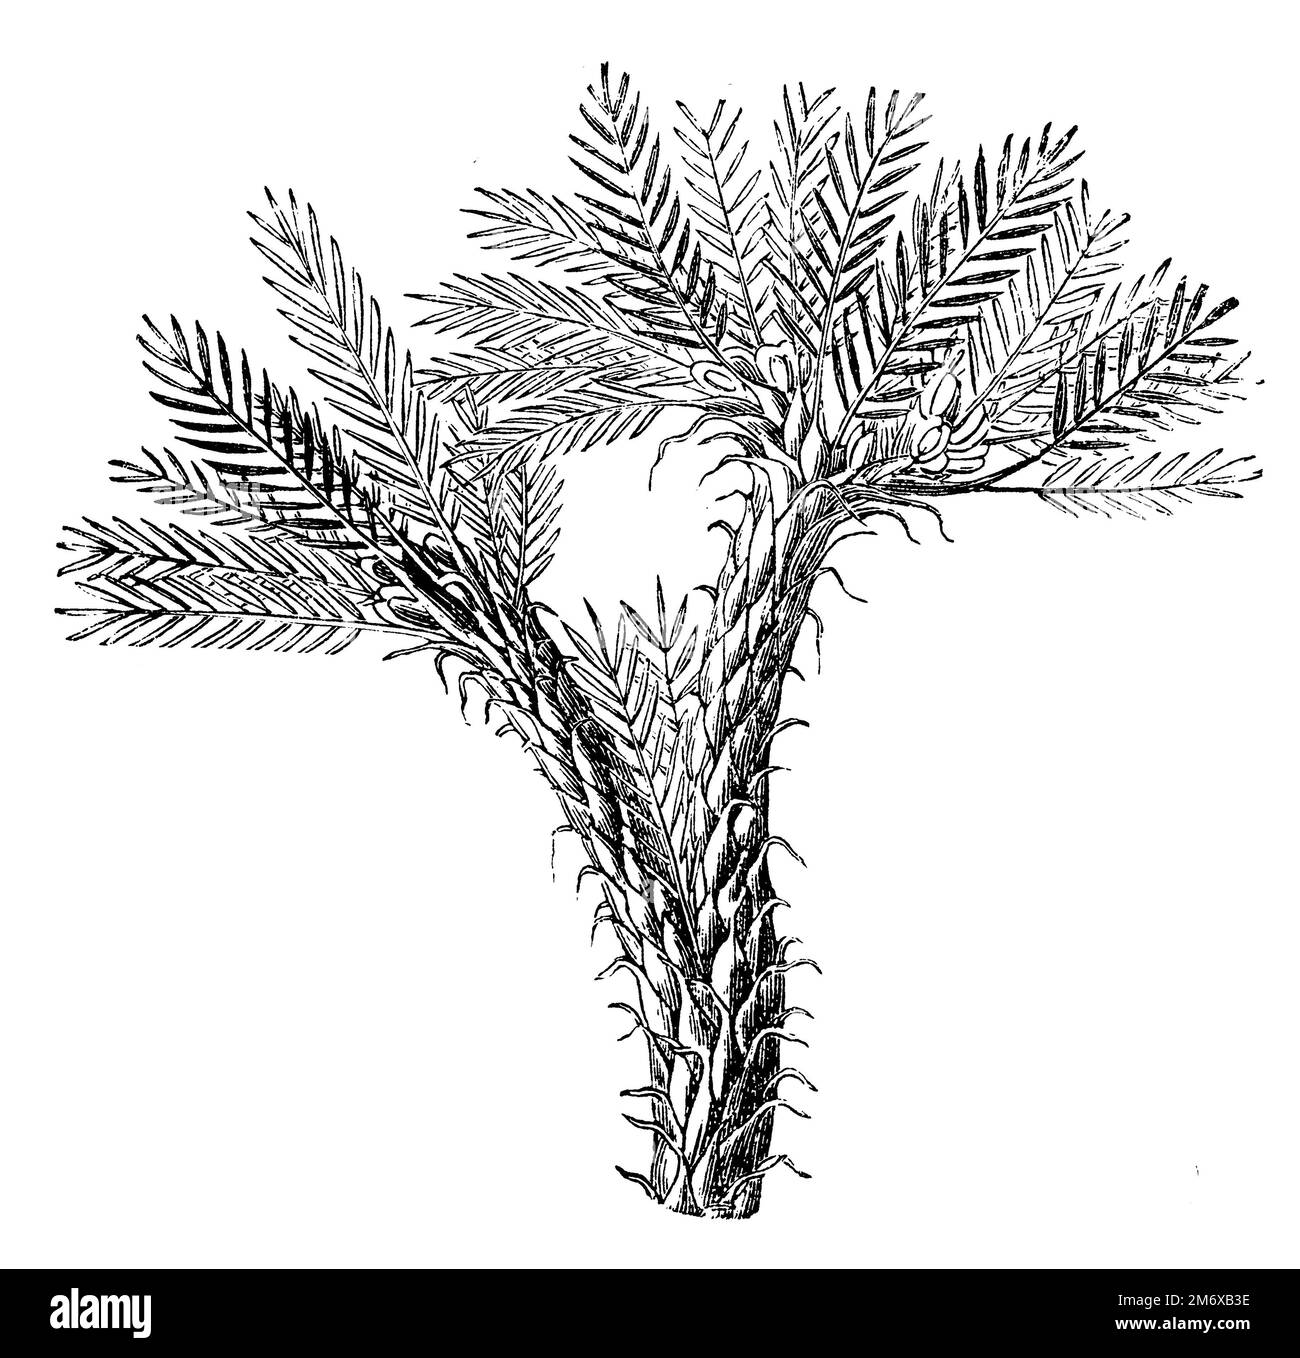 tragacanth, gum tragacanth milkvetch, Astragalus gummifer,  (encyclopedia, 1891), Astragalus gummifer, Traganthpflanze, gomme adragante Stock Photo